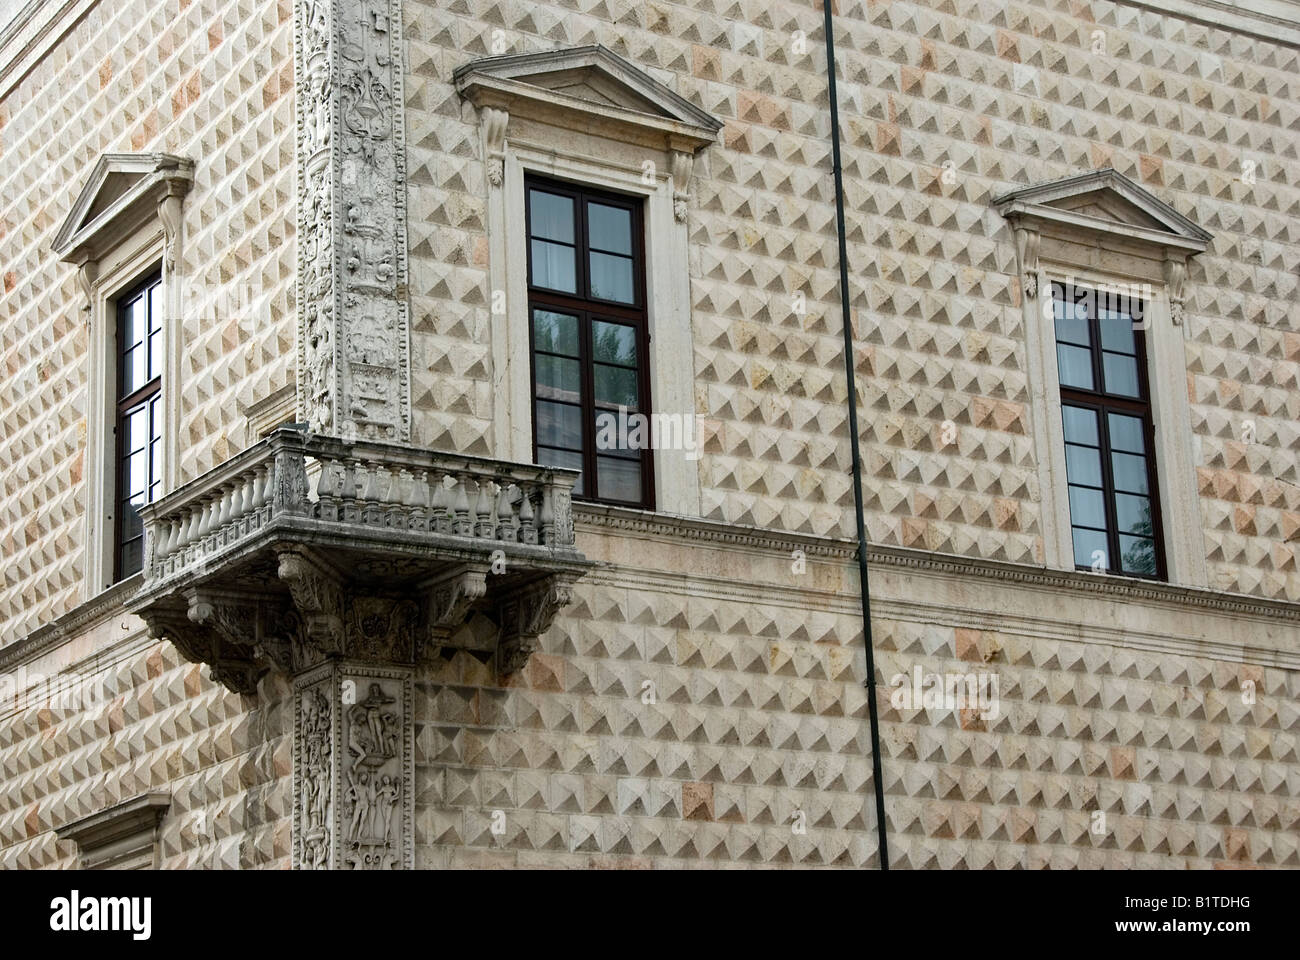 Dettagli architettonici del thr Palazzo dei Diamanti a Ferrara Italia Foto Stock